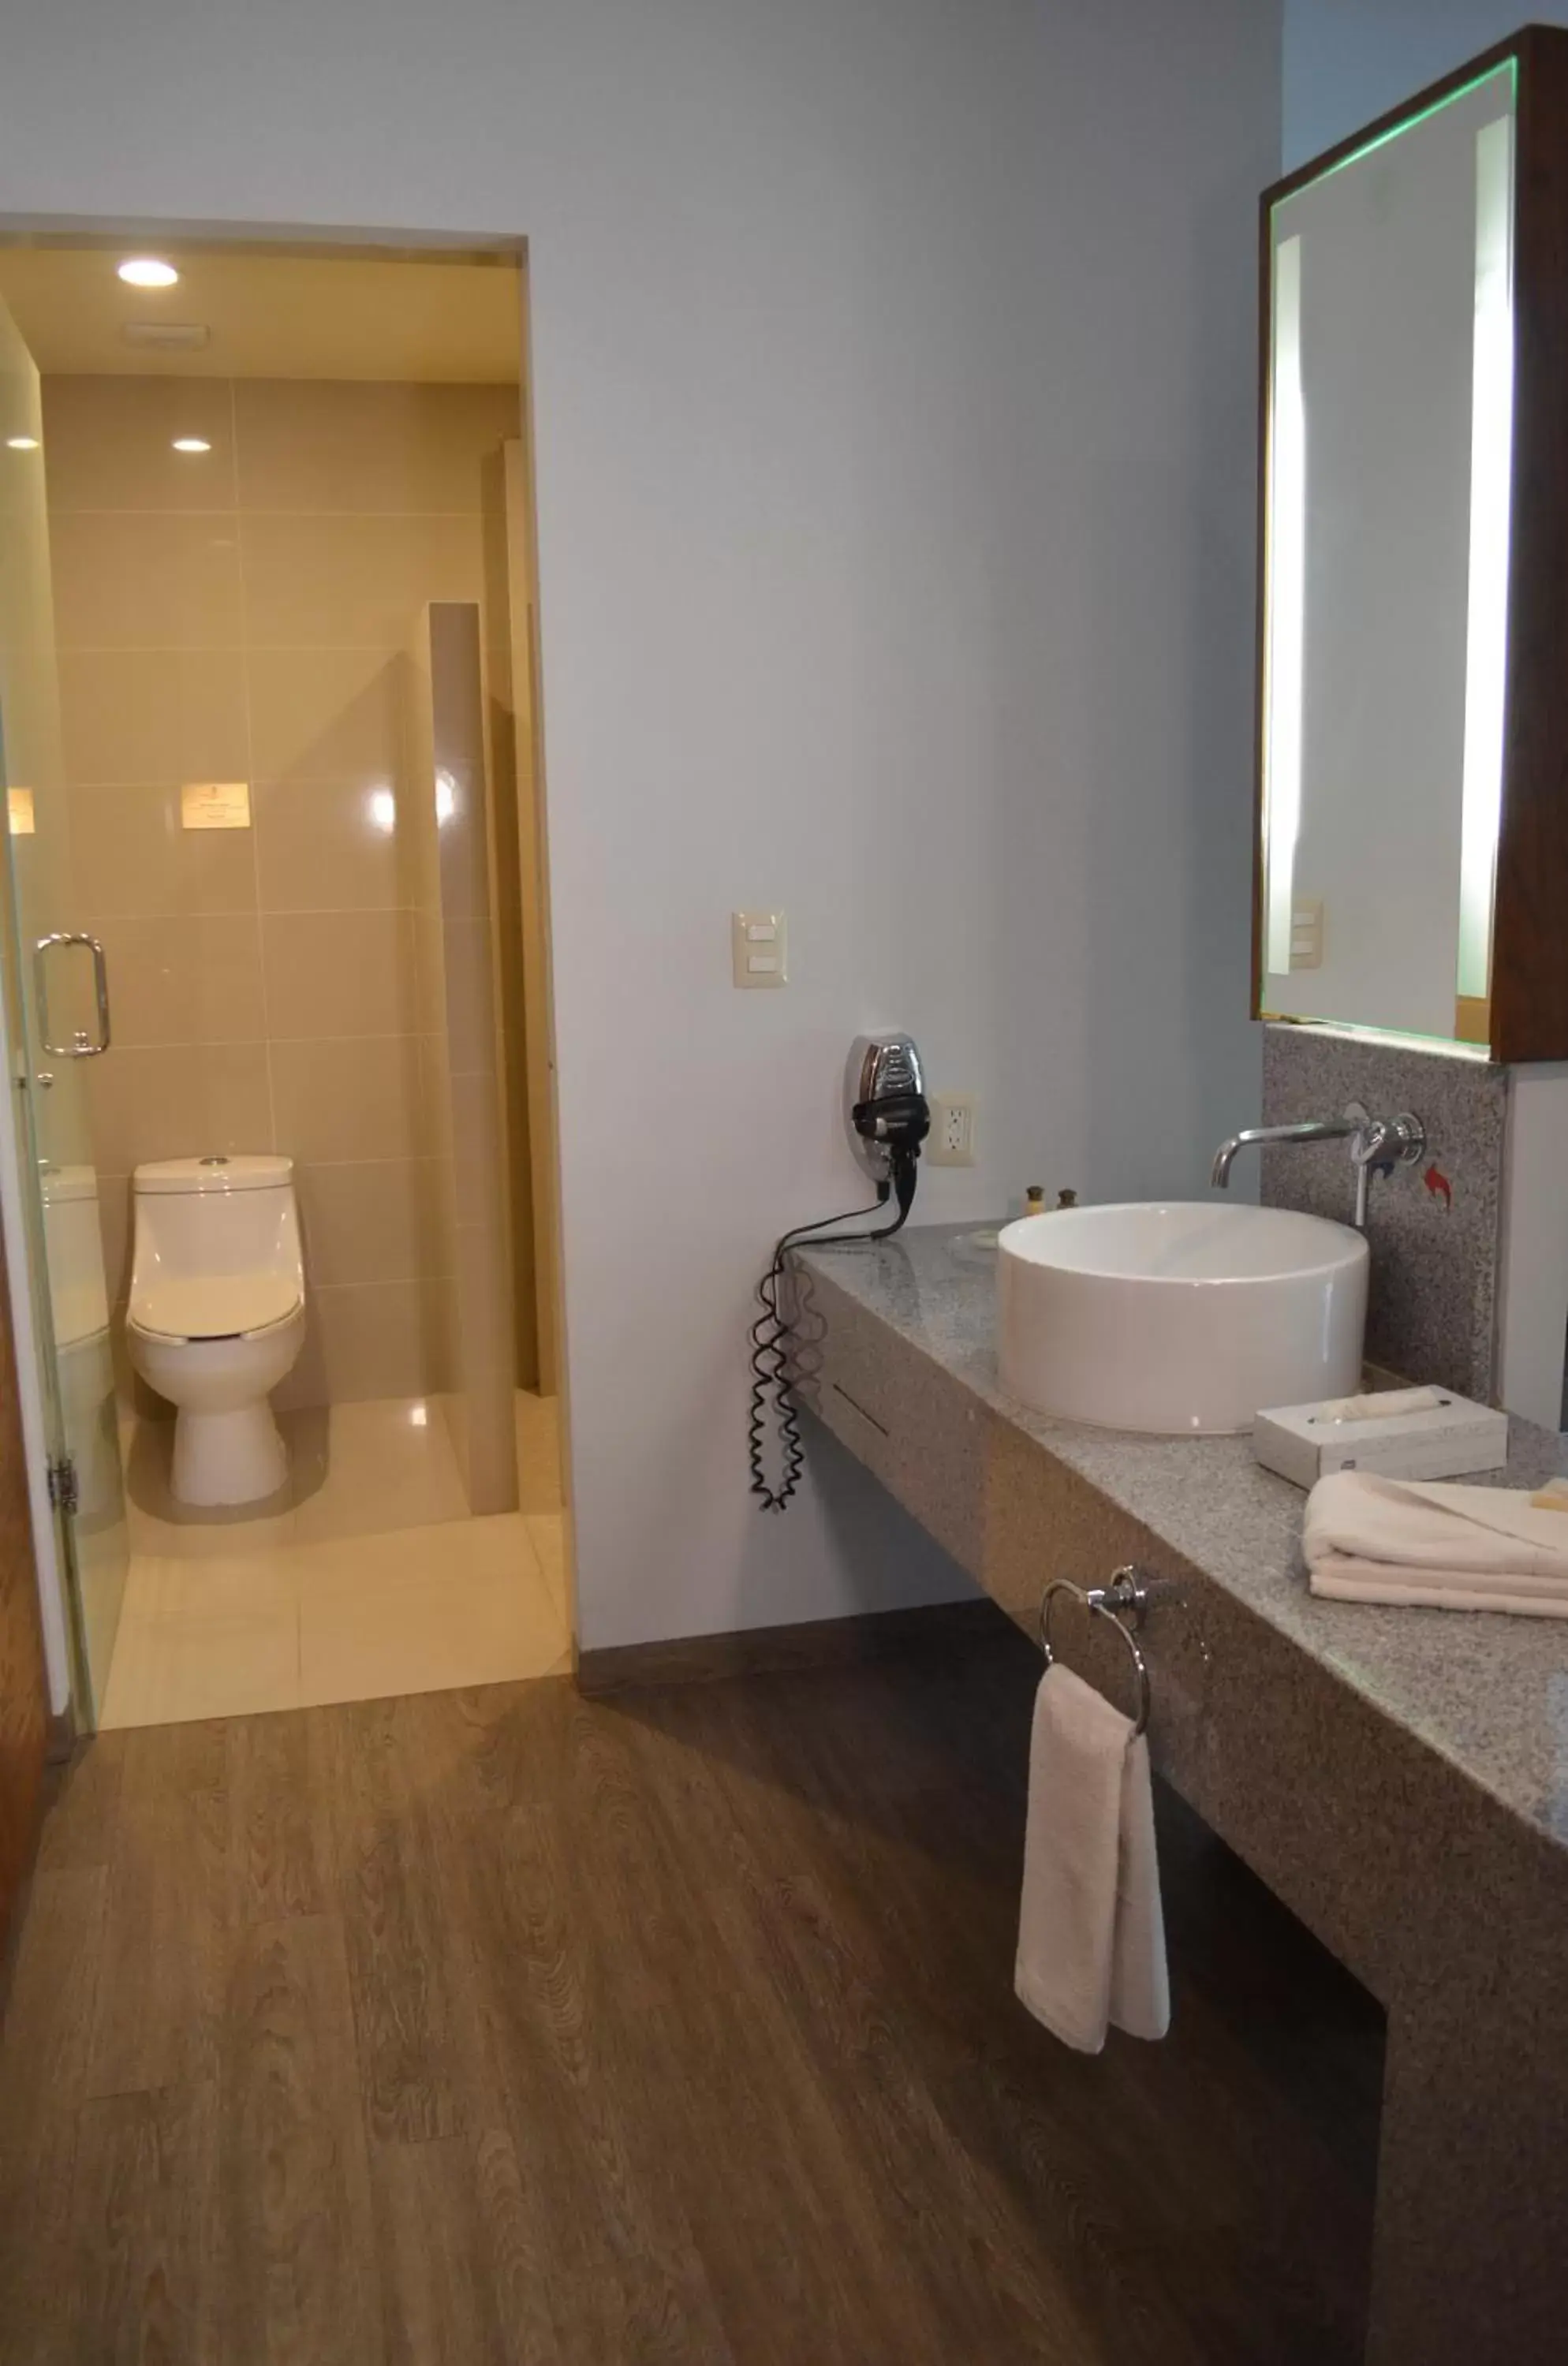 Bathroom in Plaza Camelinas Hotel